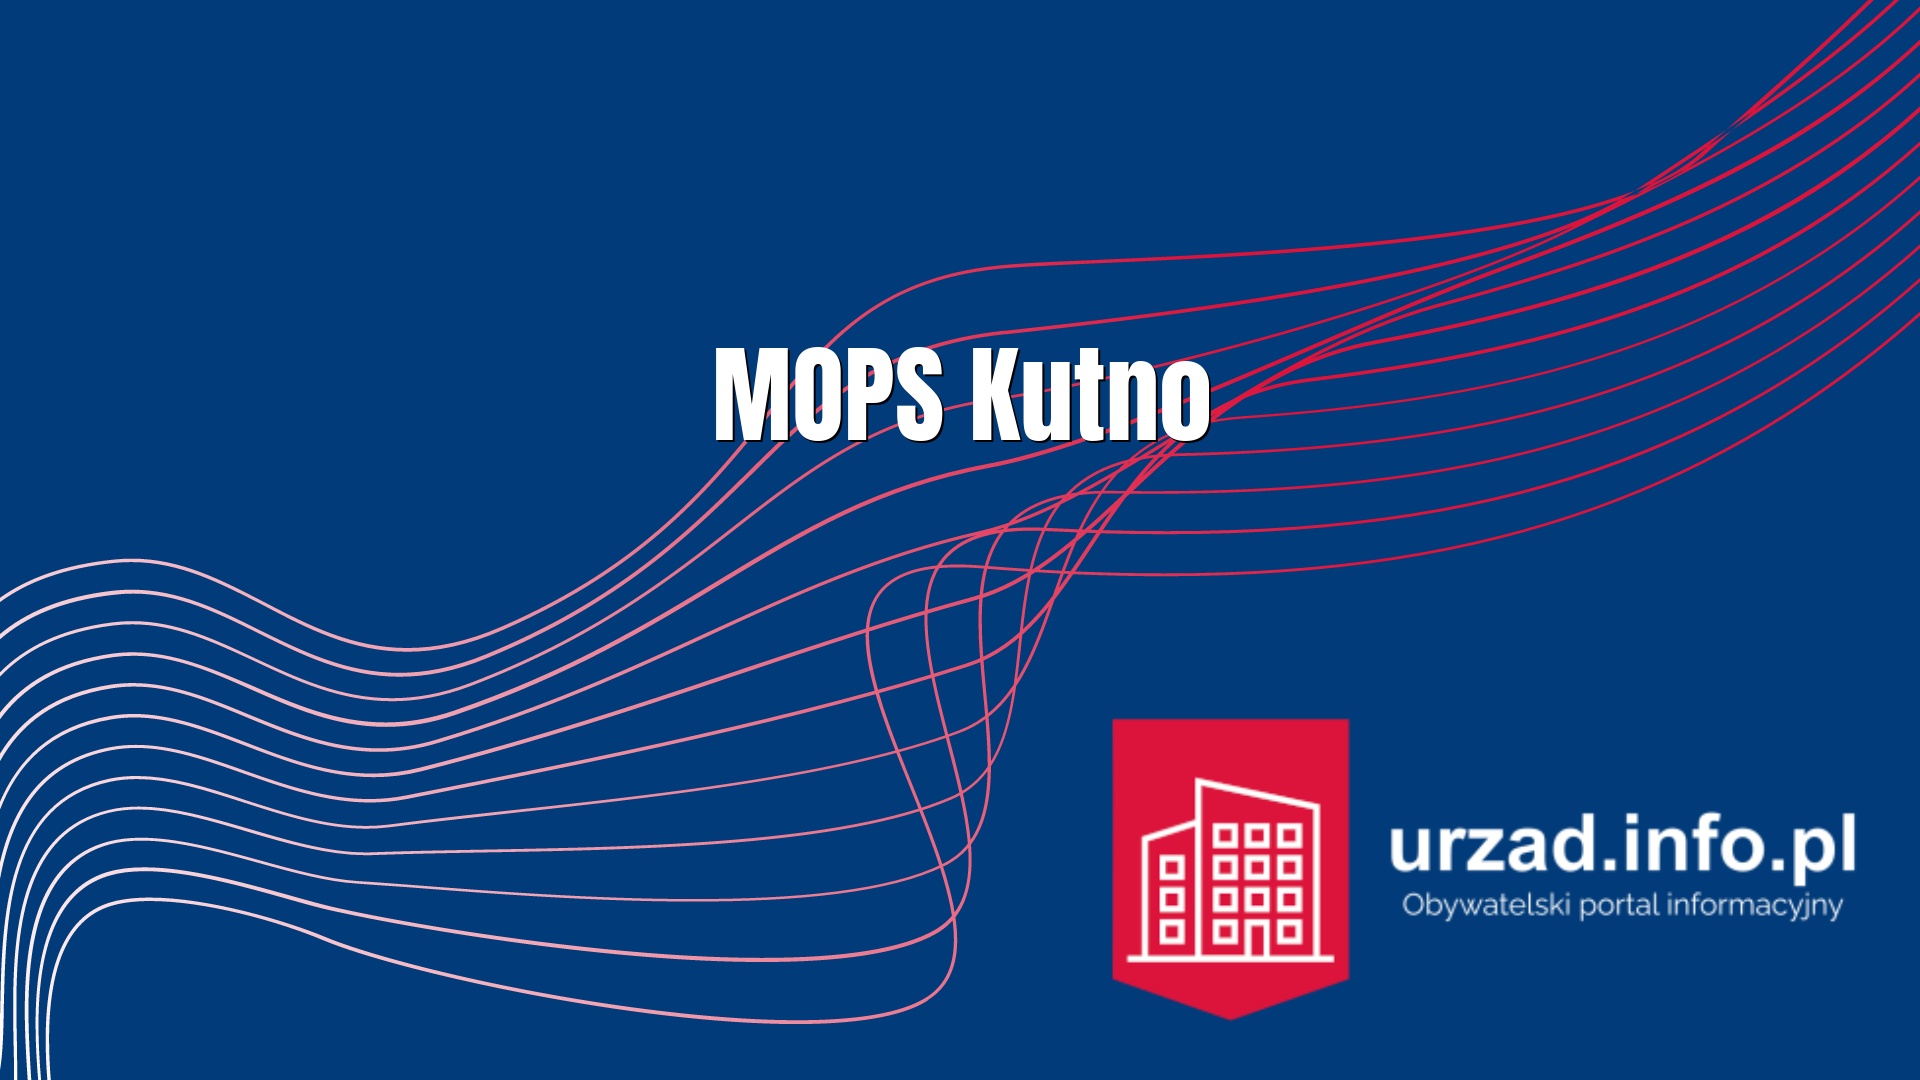   MOPS Kutno - Miejski Ośrodek Pomocy Społecznej w Kutnie